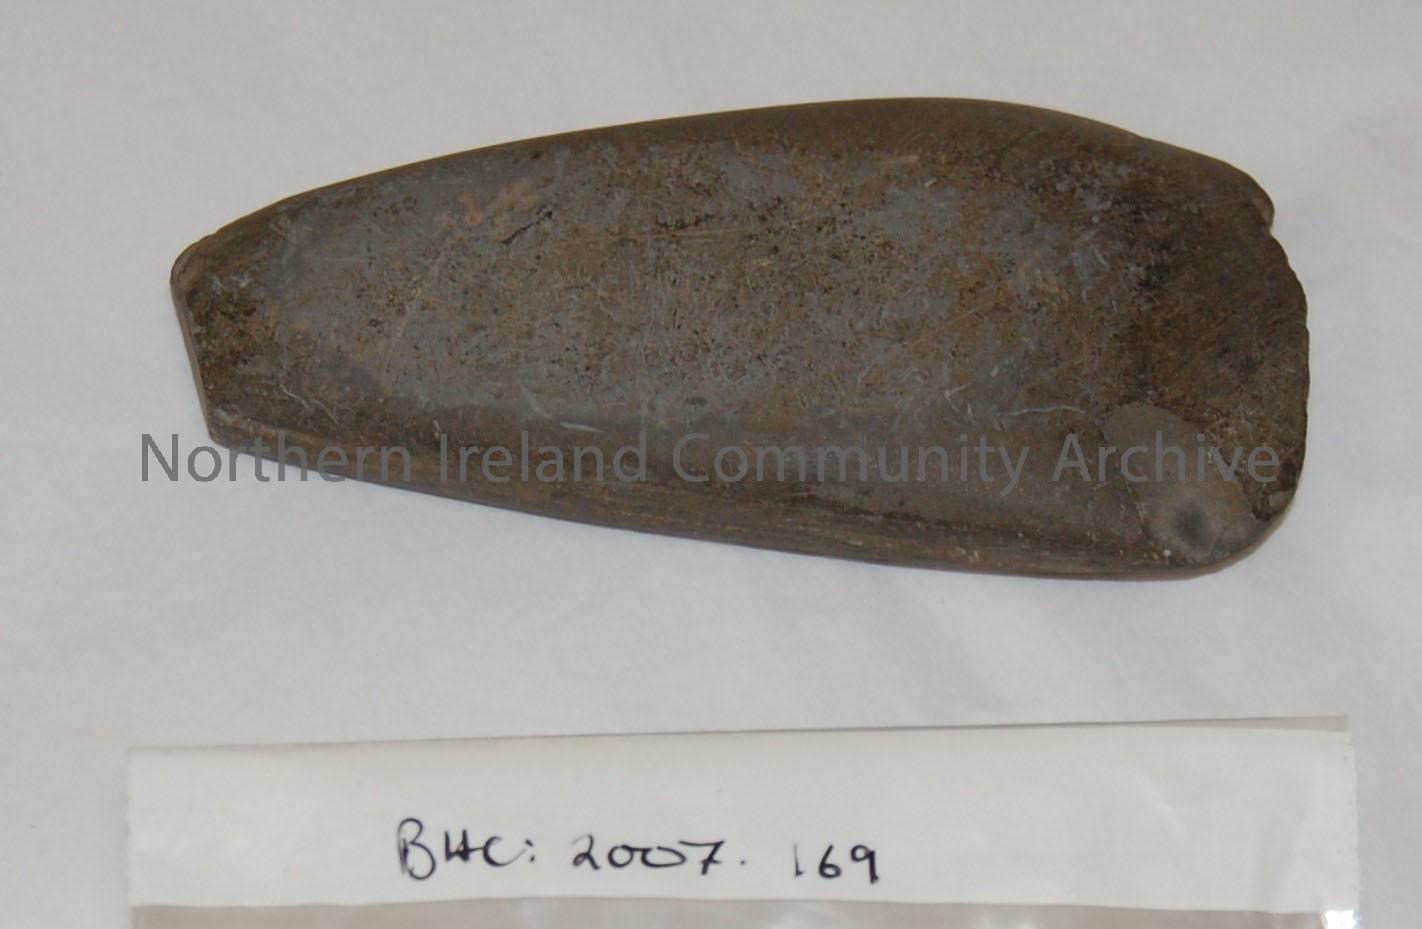 Polished stone axe, Stone Age. – 2007.169 (2)